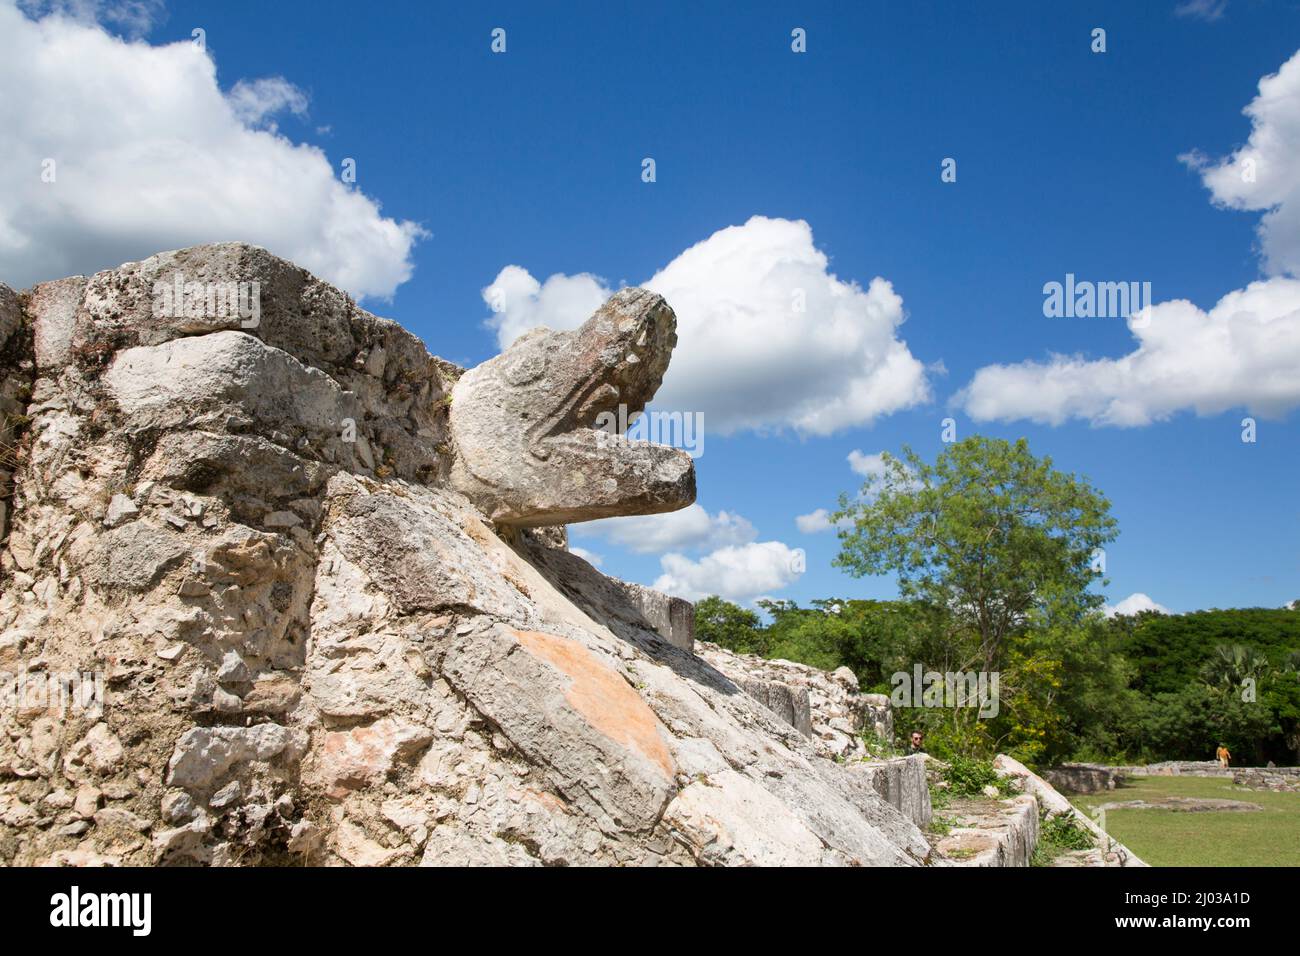 Tête de serpent de pierre, Temple des guerriers, ruines mayas, zone archéologique de Mayapan, État du Yucatan, Mexique, Amérique du Nord Banque D'Images